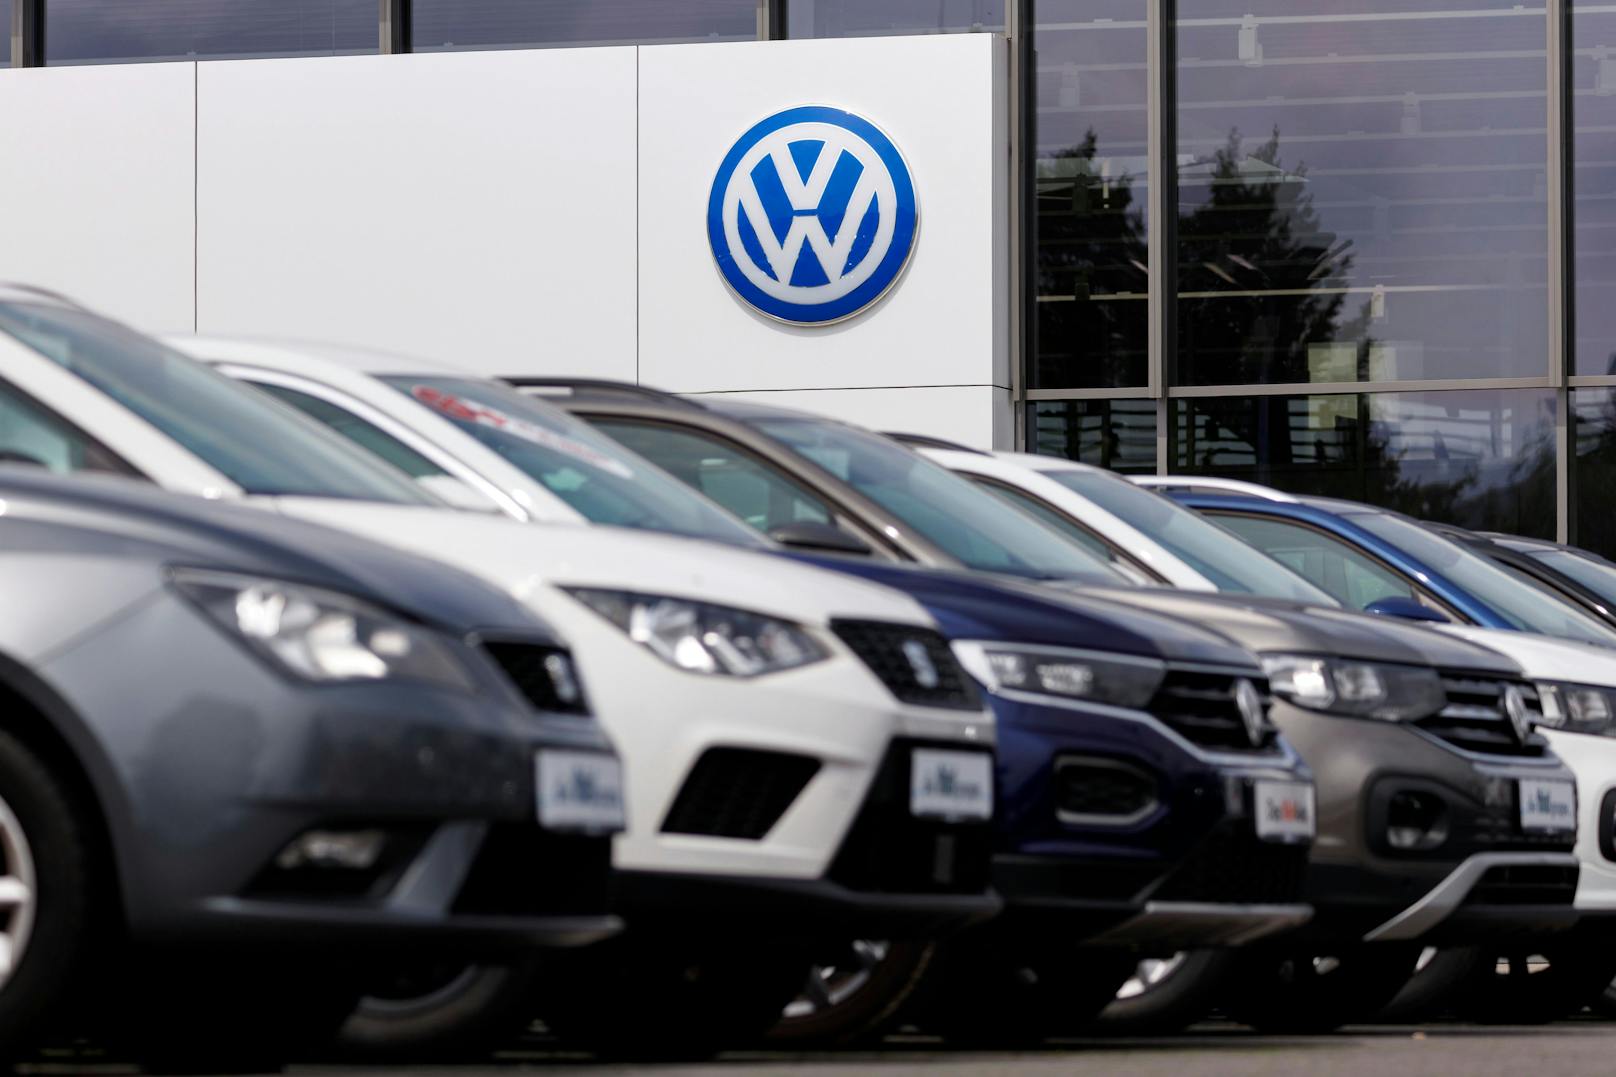 Erstmals hat ein Österreicher eine Klage gegen VW, die im Zusammenhang mit dem Diesel-Abgasskandal aus 2015 steht, gewonnen. (Symbolbild)